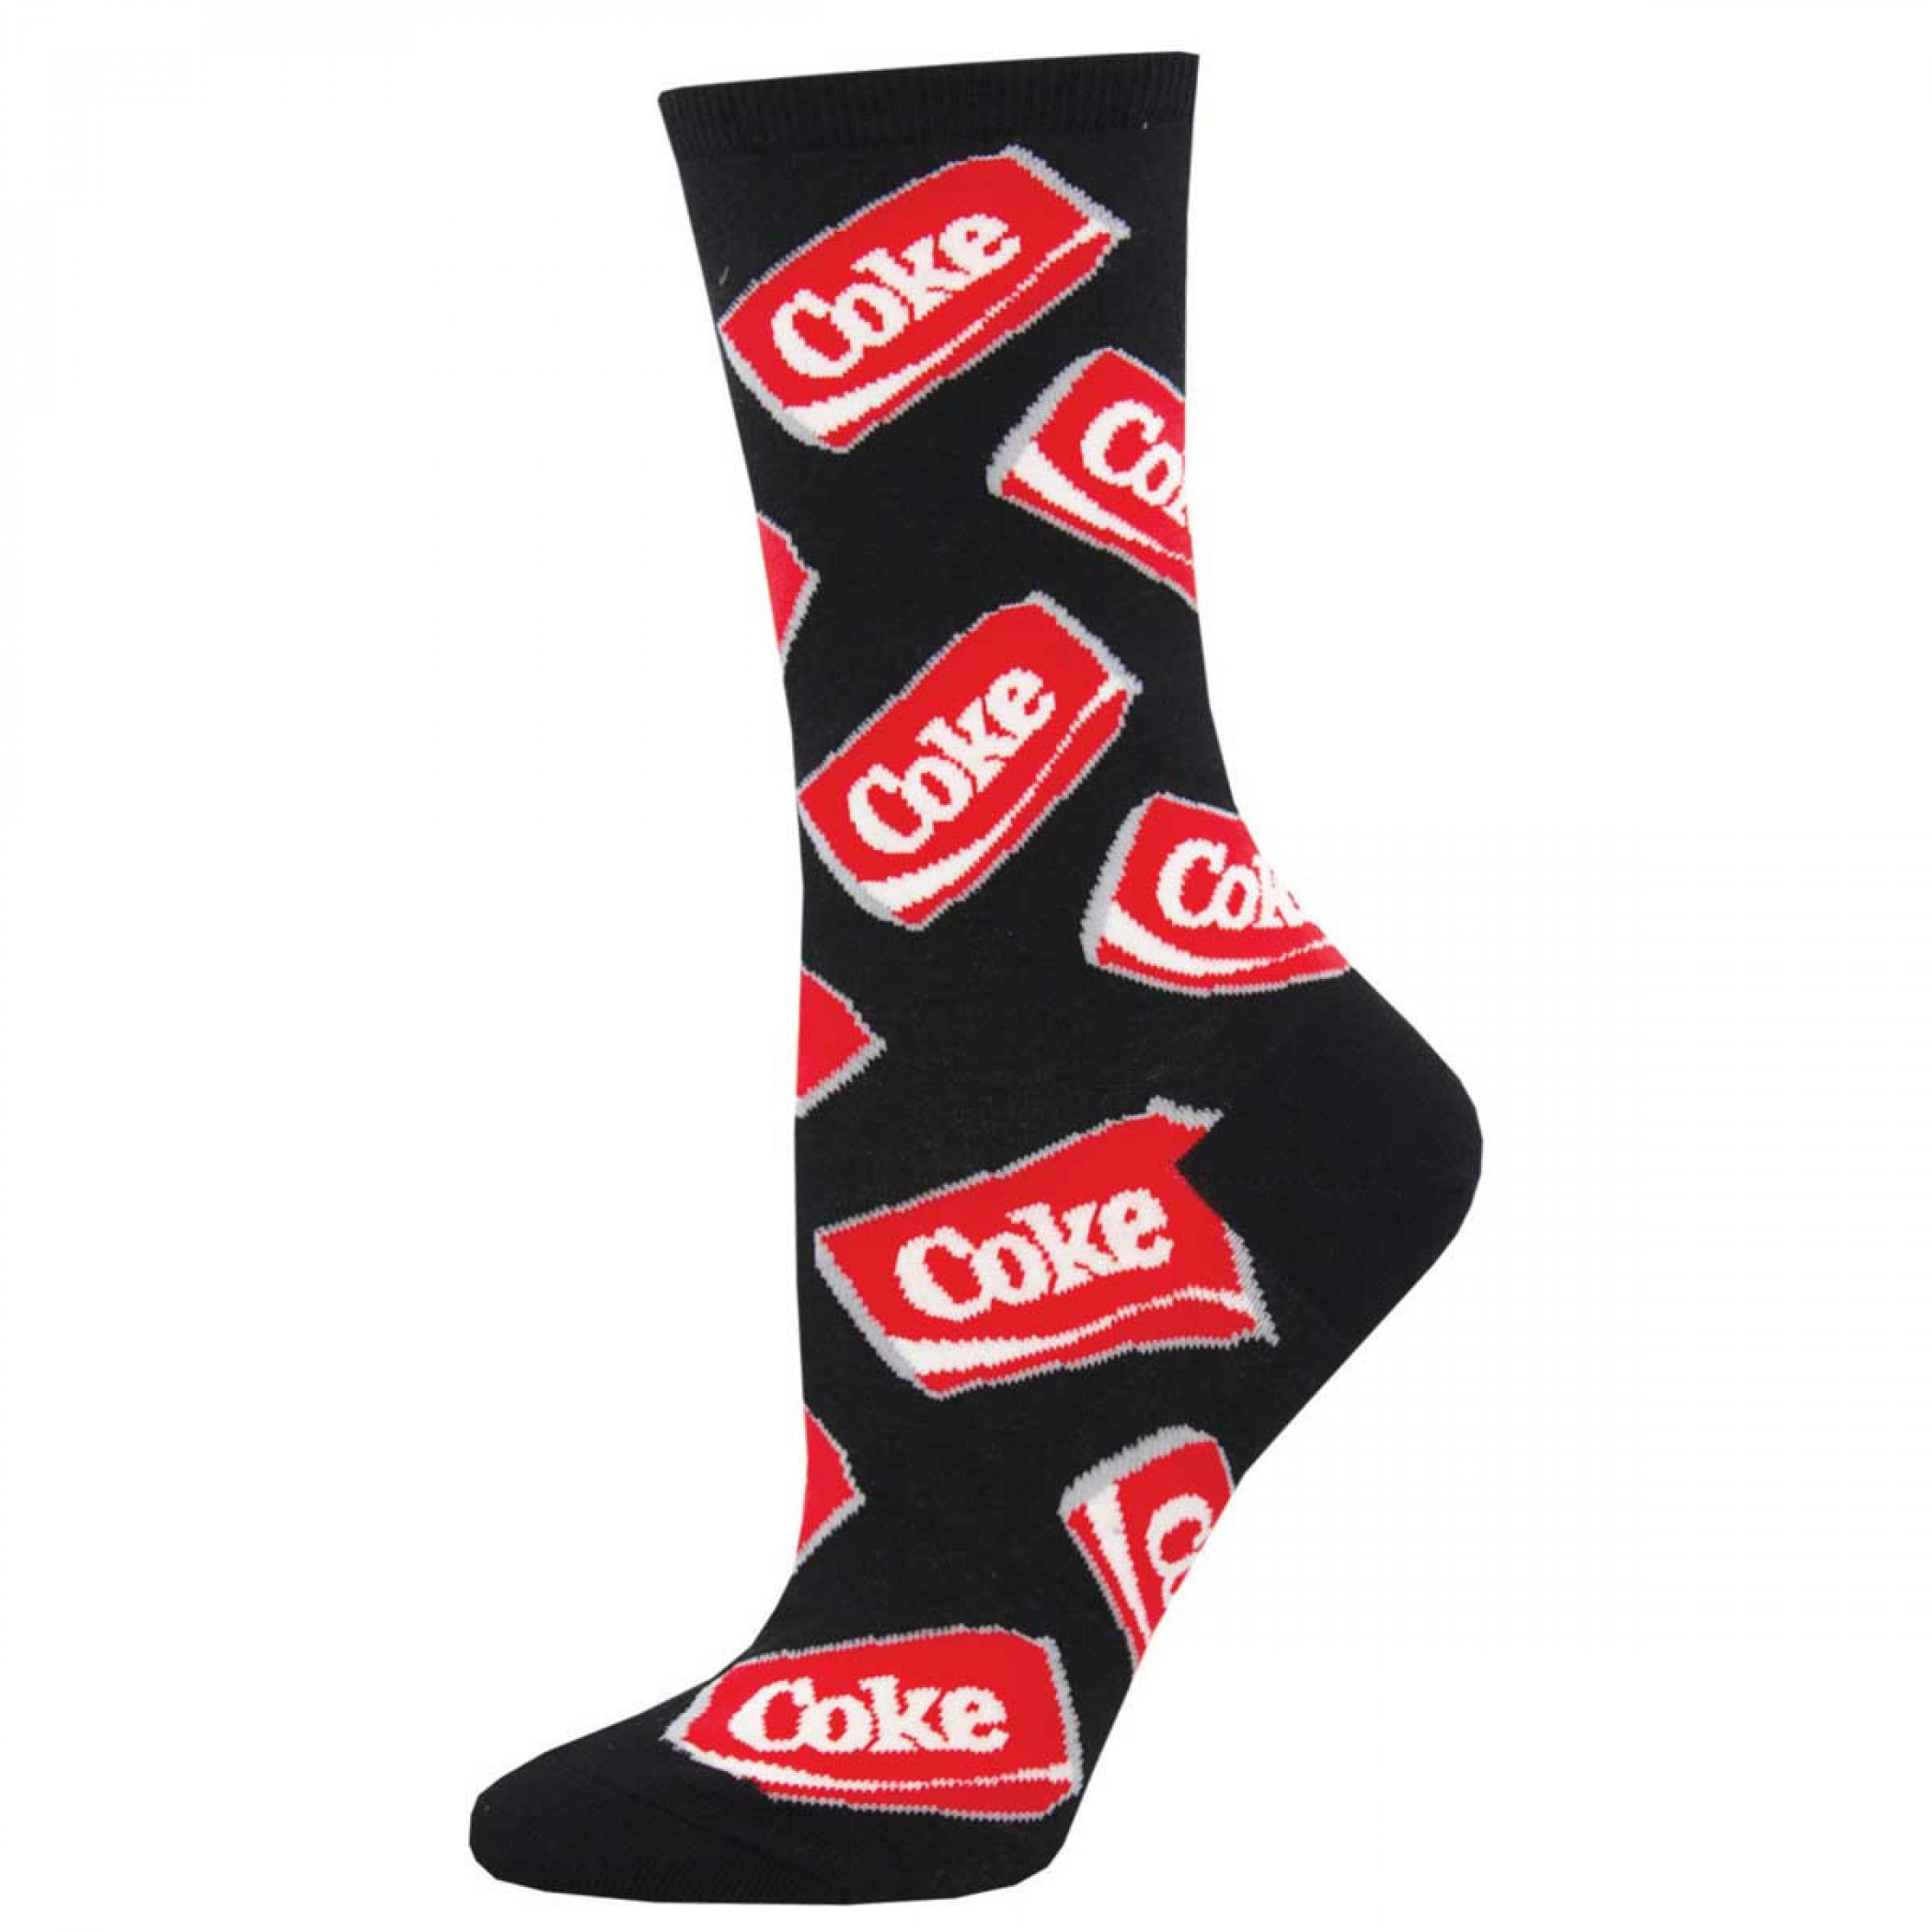 Coke-Cola Soda Cans Men's Socks